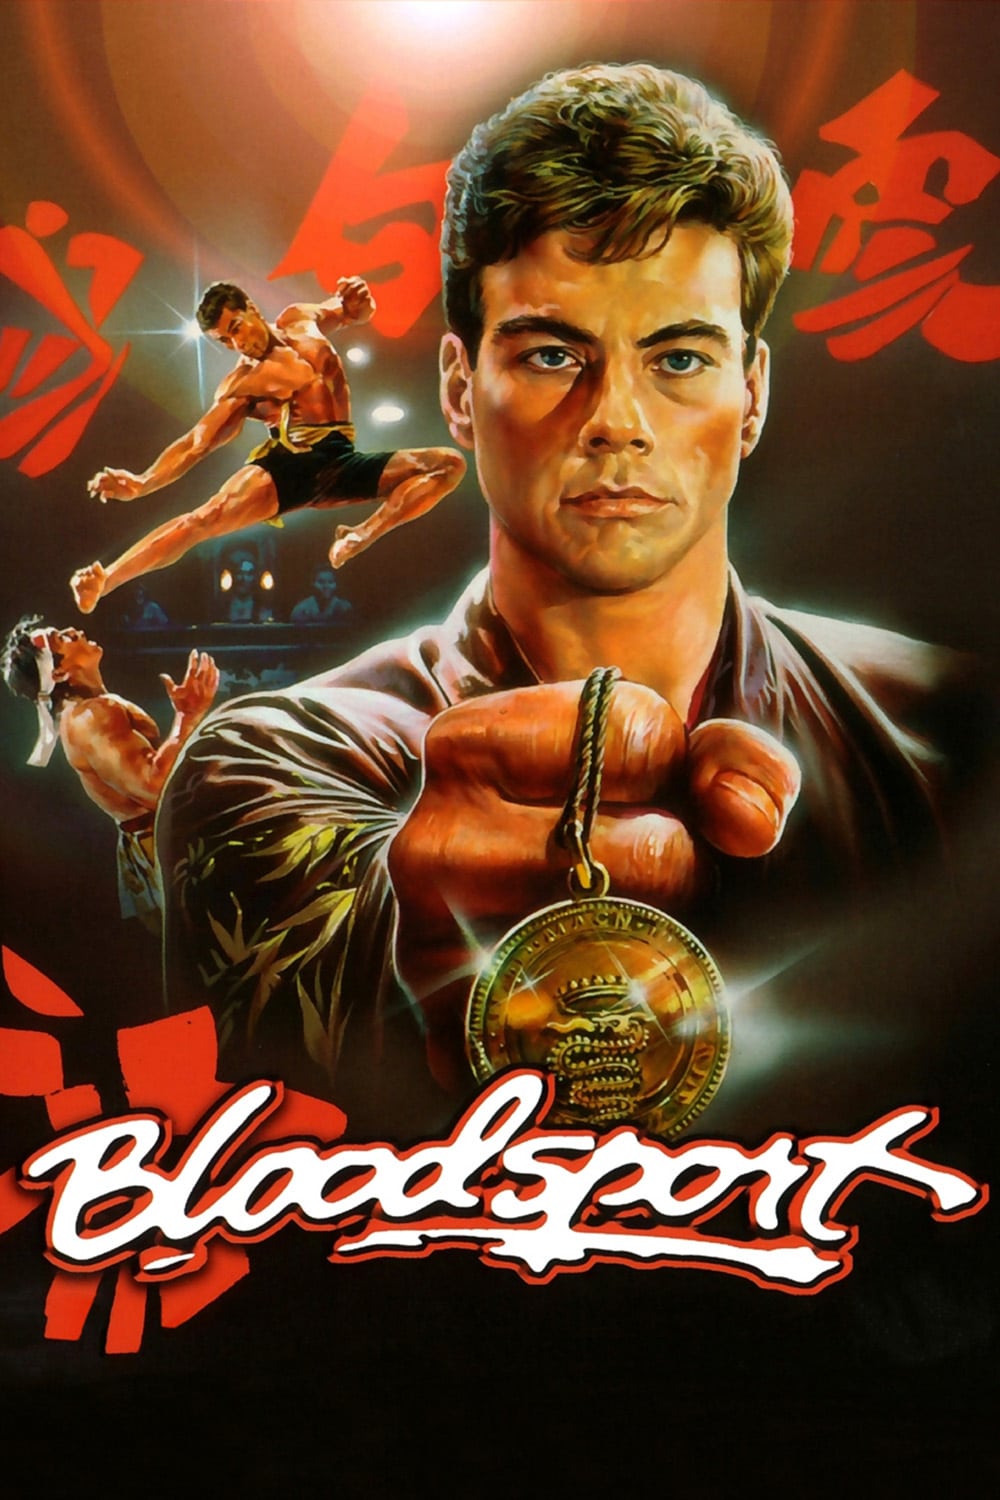 Plakat von "Bloodsport"